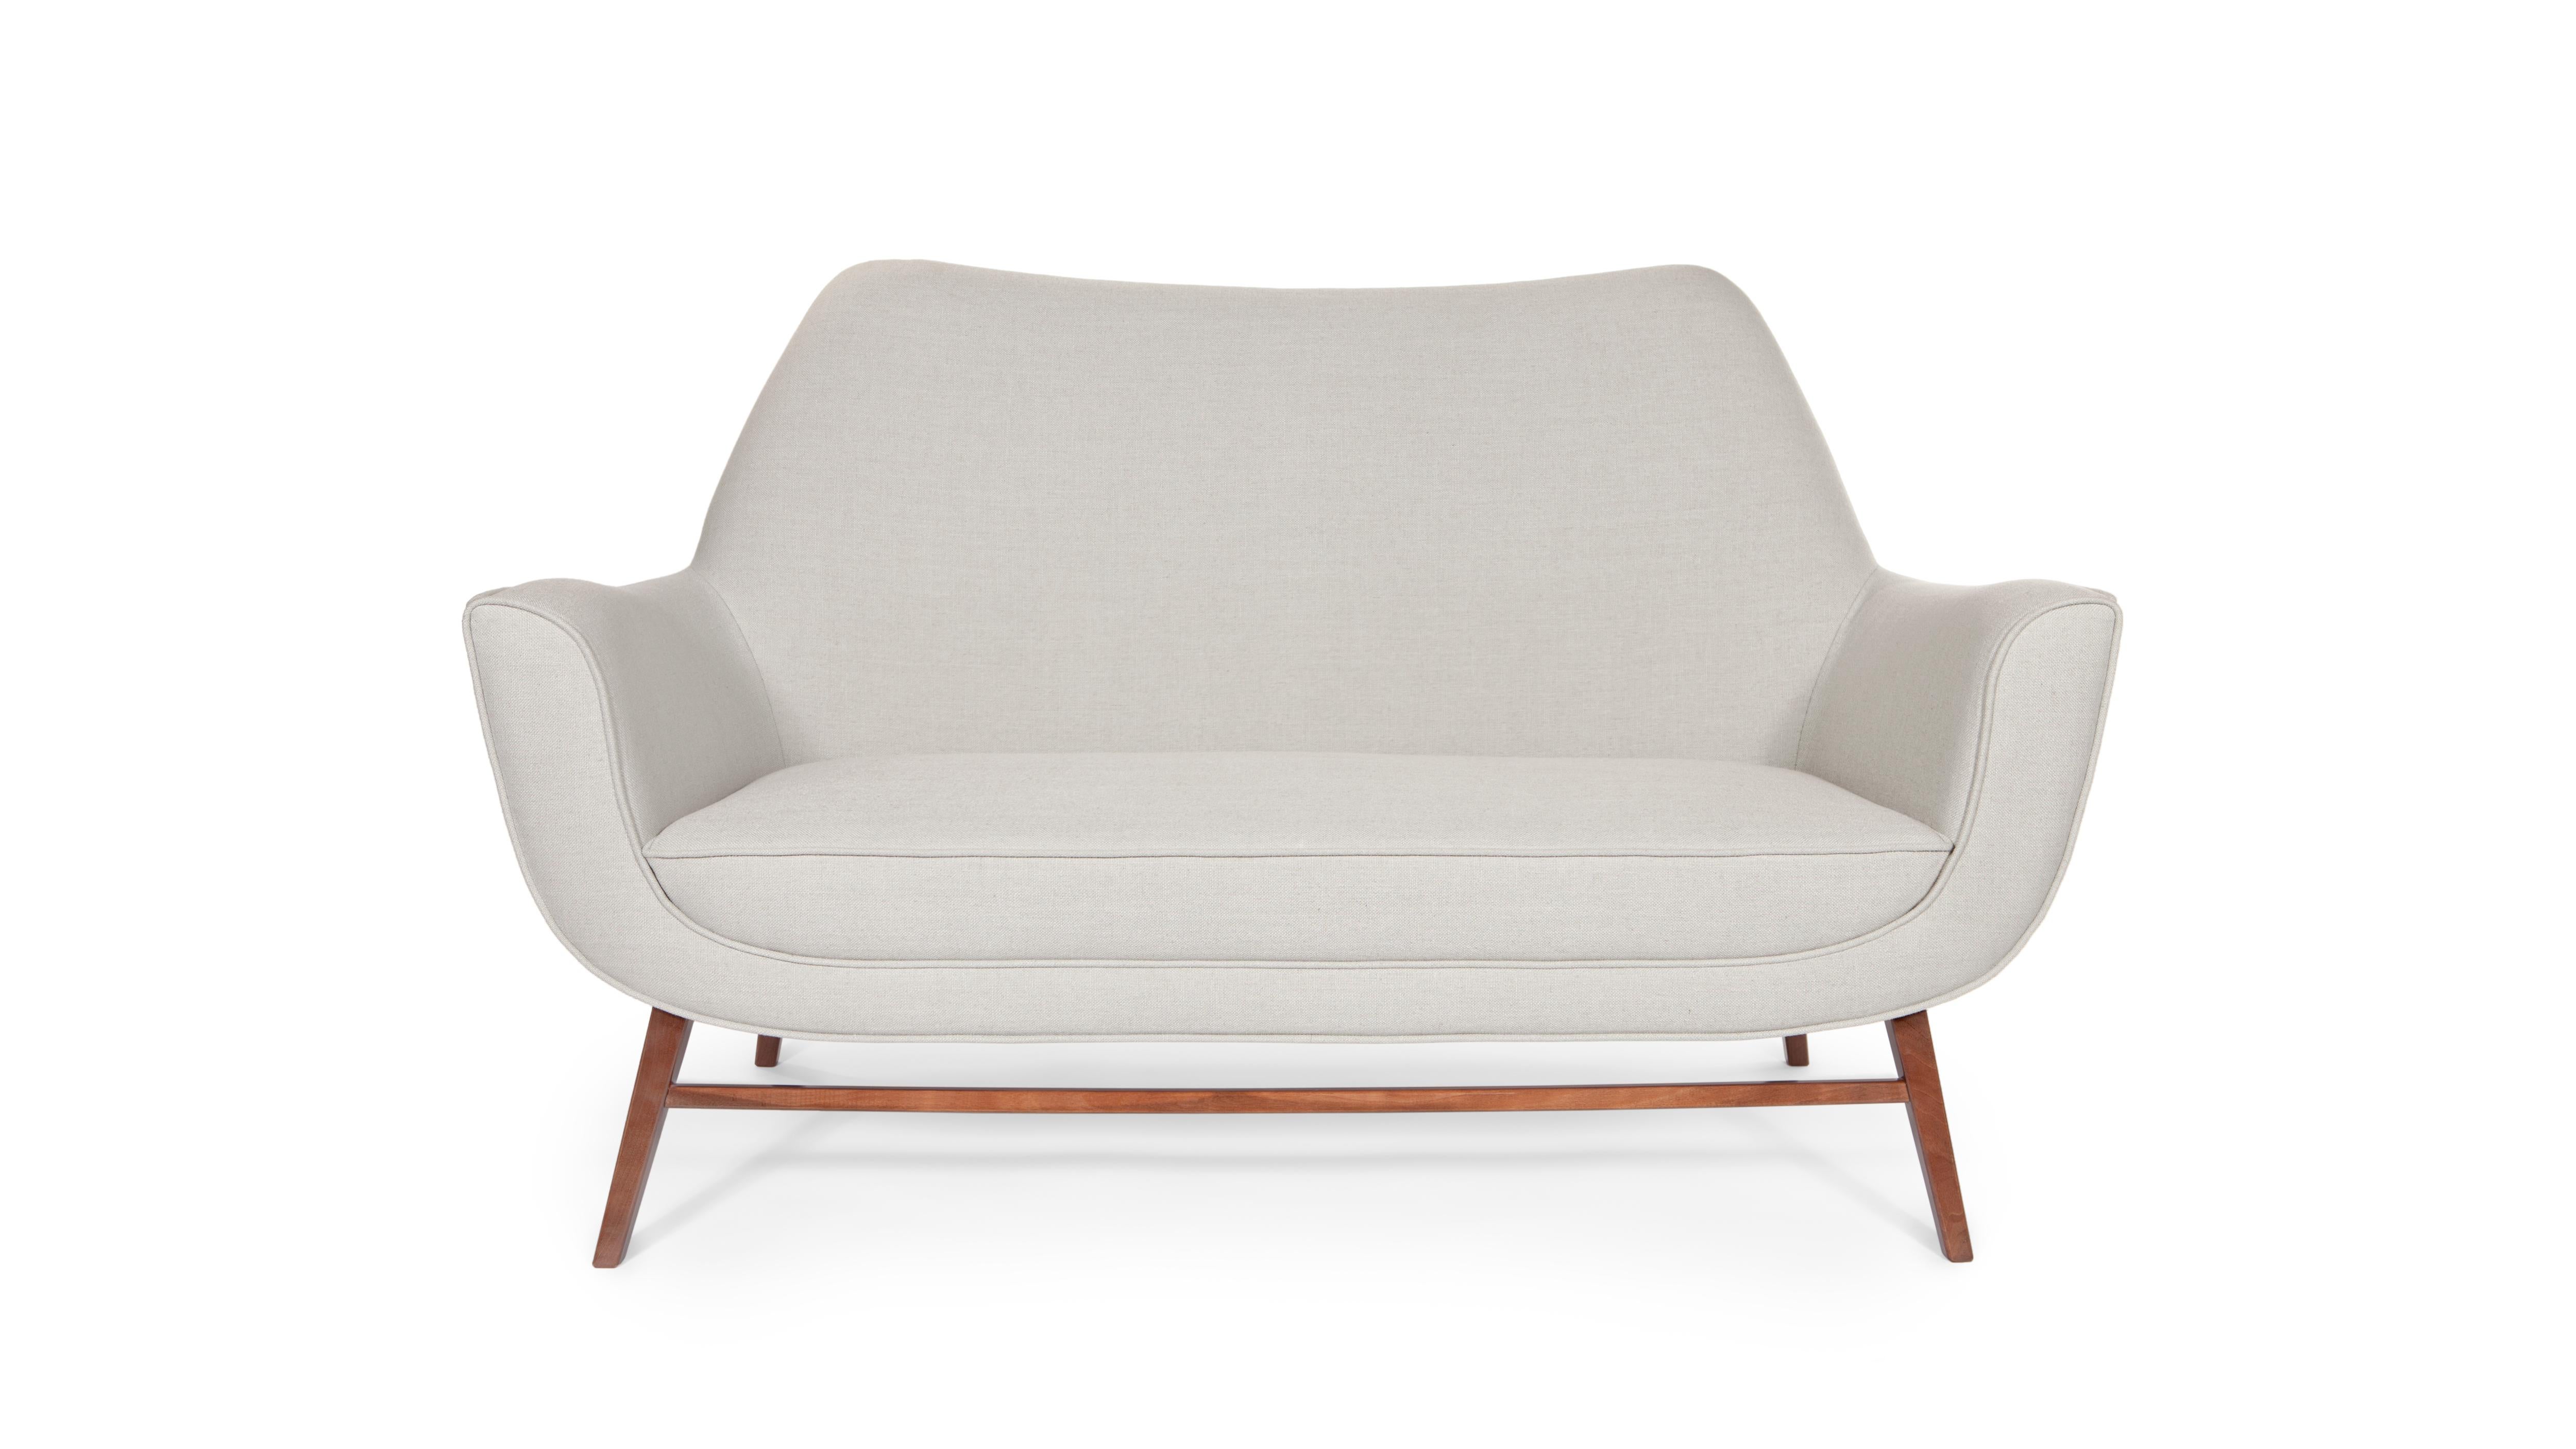 Western 2-Sitz-Sofa von InsidherLand
Abmessungen: T 82 x B 150 x H 95 cm.
MATERIALIEN: Nussbaum, InsidherLand Canyon Ref. Hellgrauer Stoff.
30 kg.
Erhältlich in verschiedenen Stoffen.

Das Westernsofa ähnelt dem ursprünglichen Design des